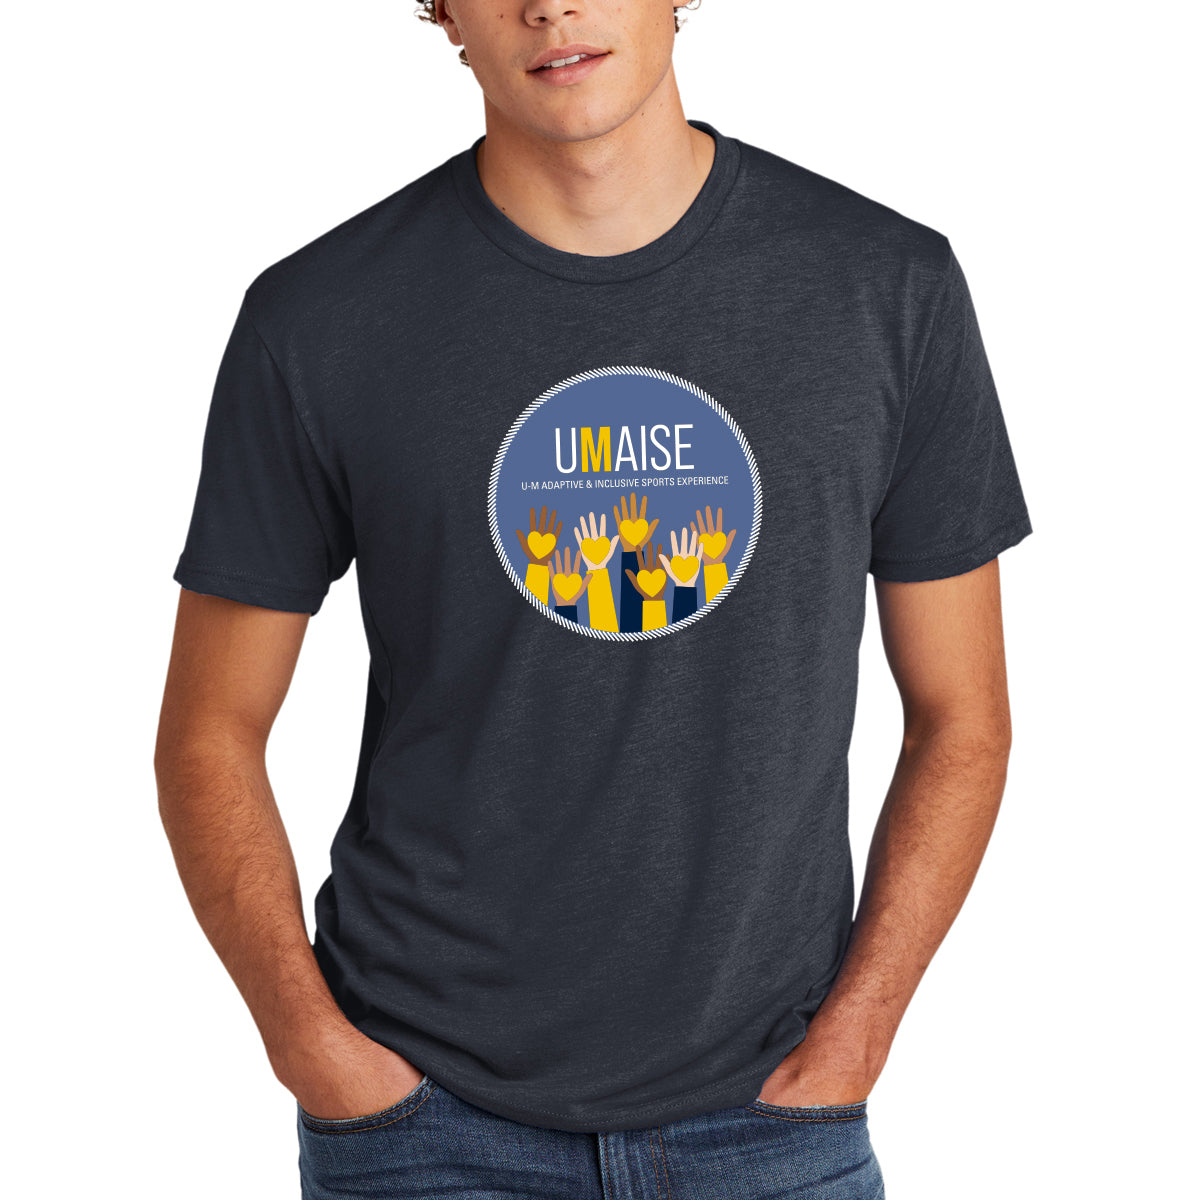 UMAISE Unisex Triblend T-Shirt - Vintage Navy